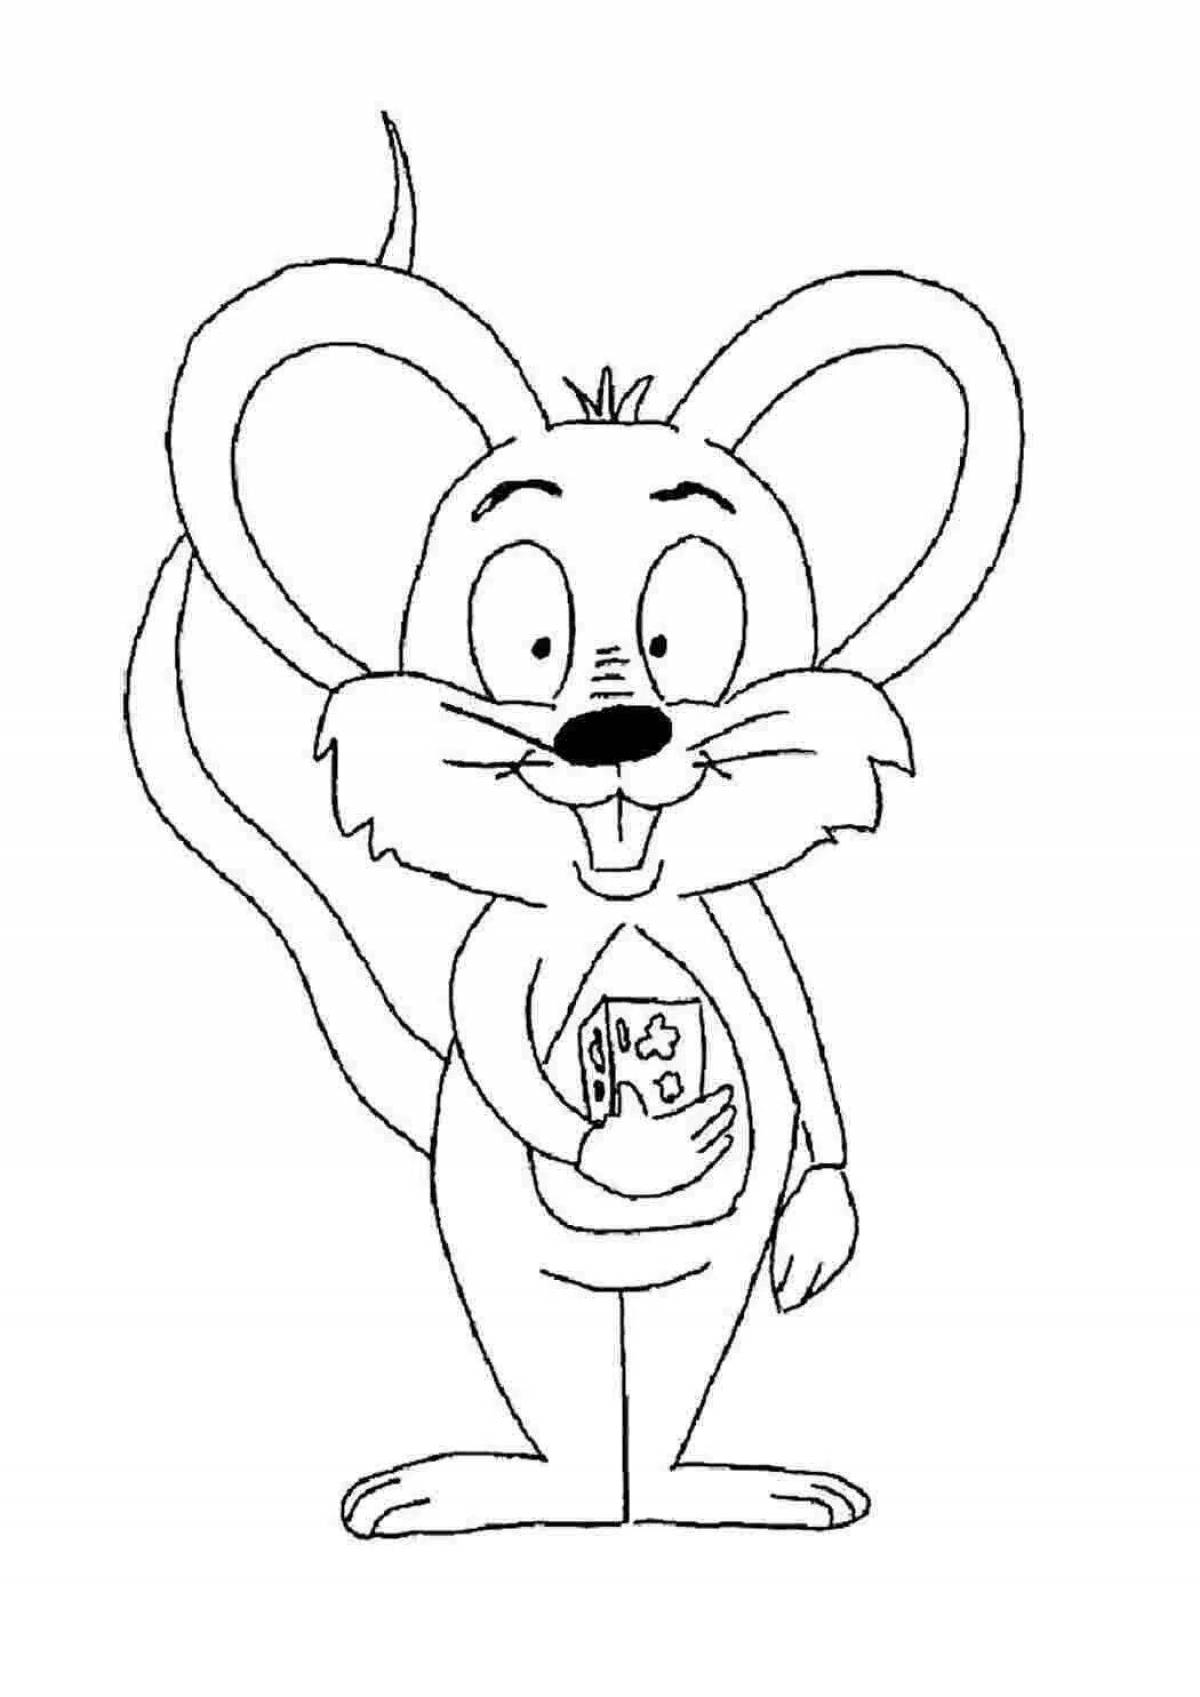 Раскраска мышь распечатать. Мышь раскраска. Раскраска мышонок. Мышь раскраска для детей. Мышонок раскраска для детей.